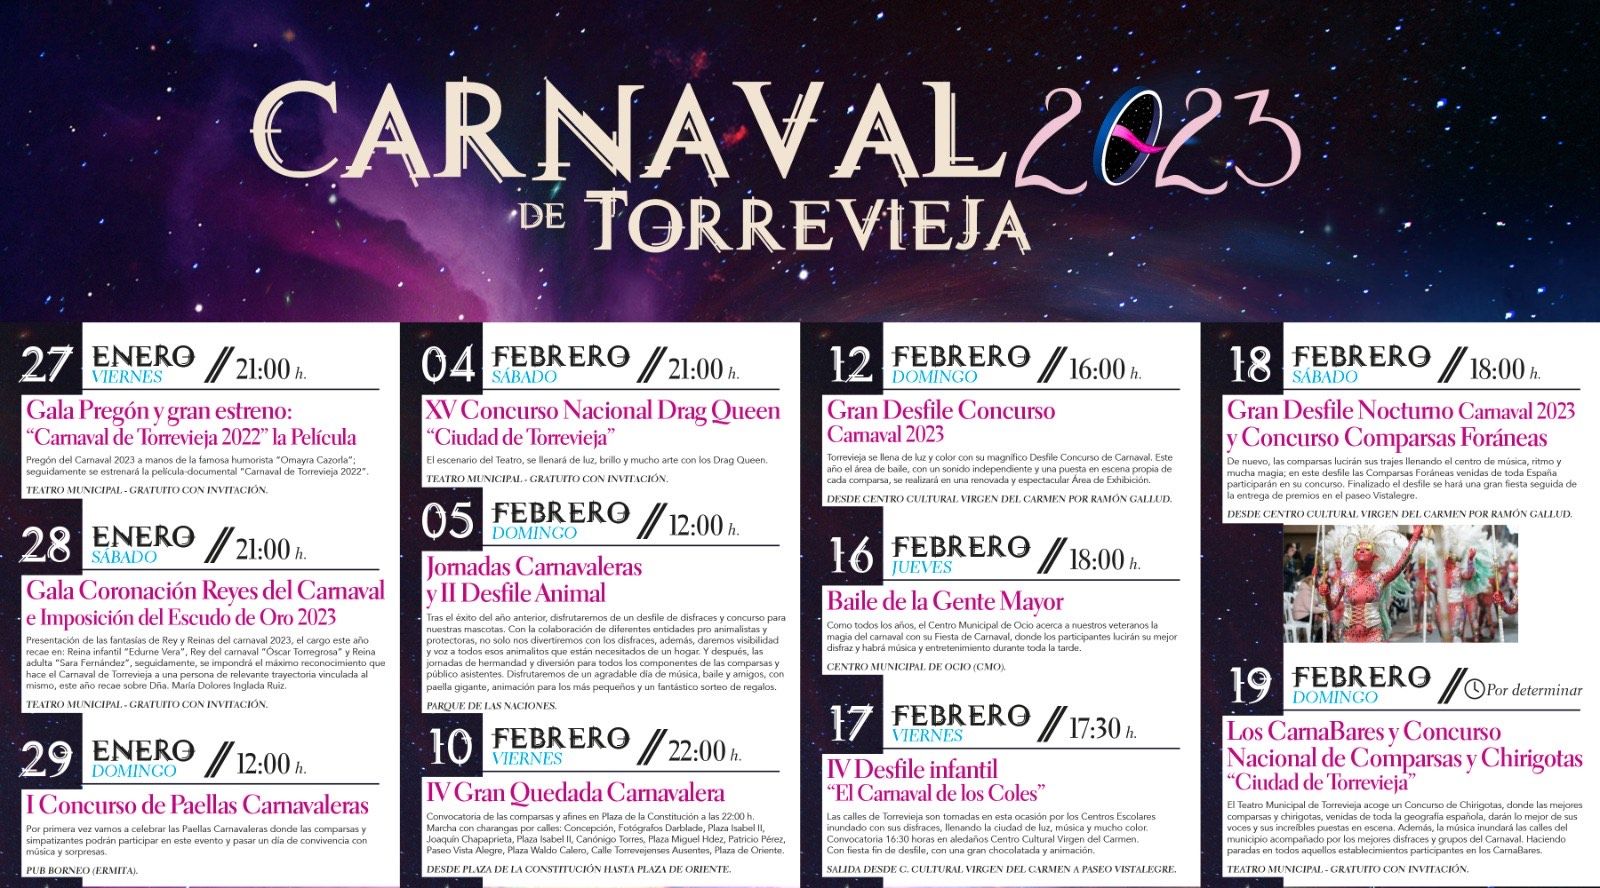 Programa de actos del carnaval